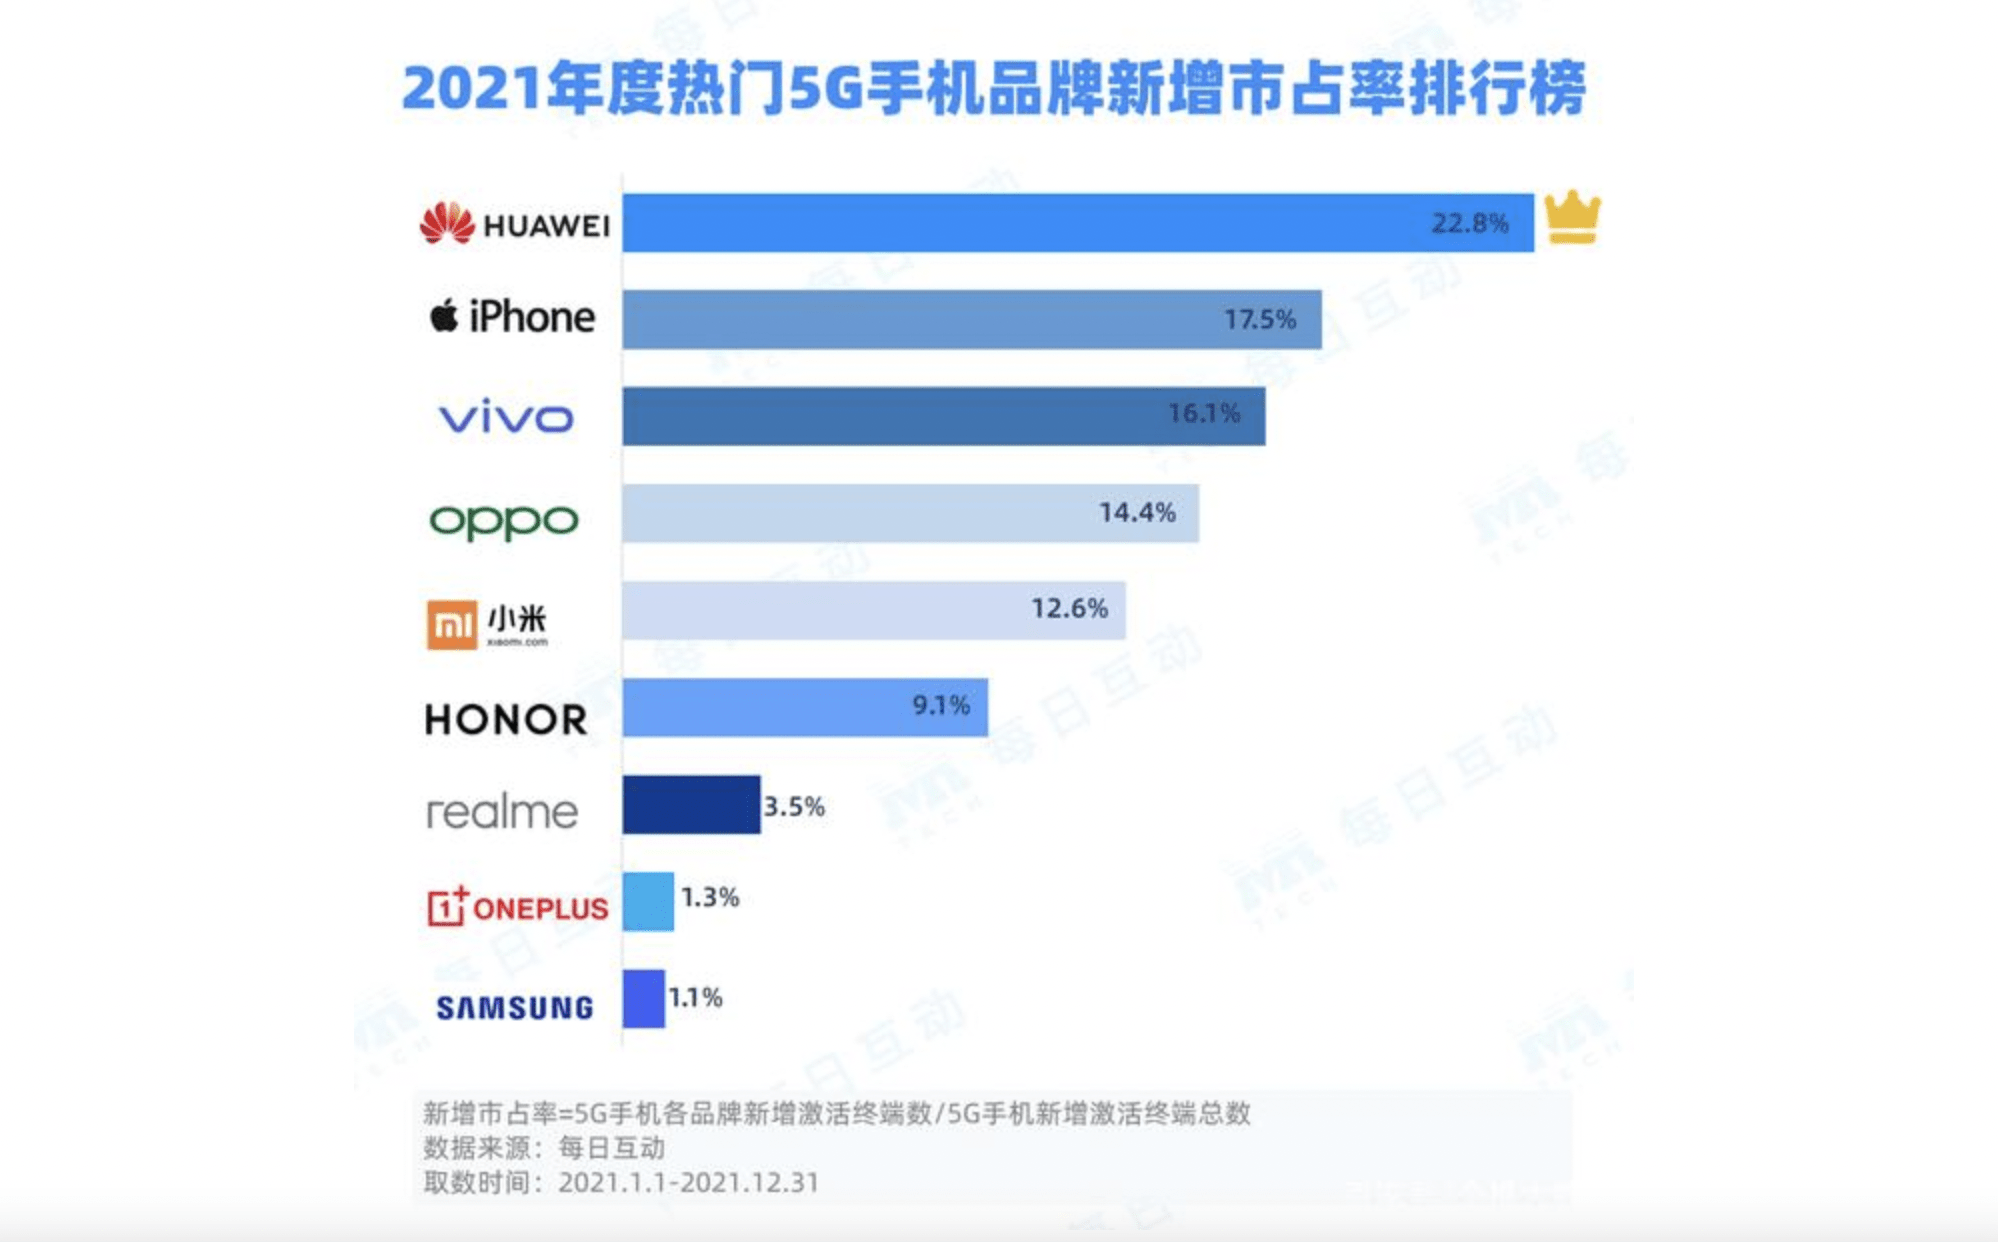 在热门5g手机品牌新增市场占有率中,华为再次以22